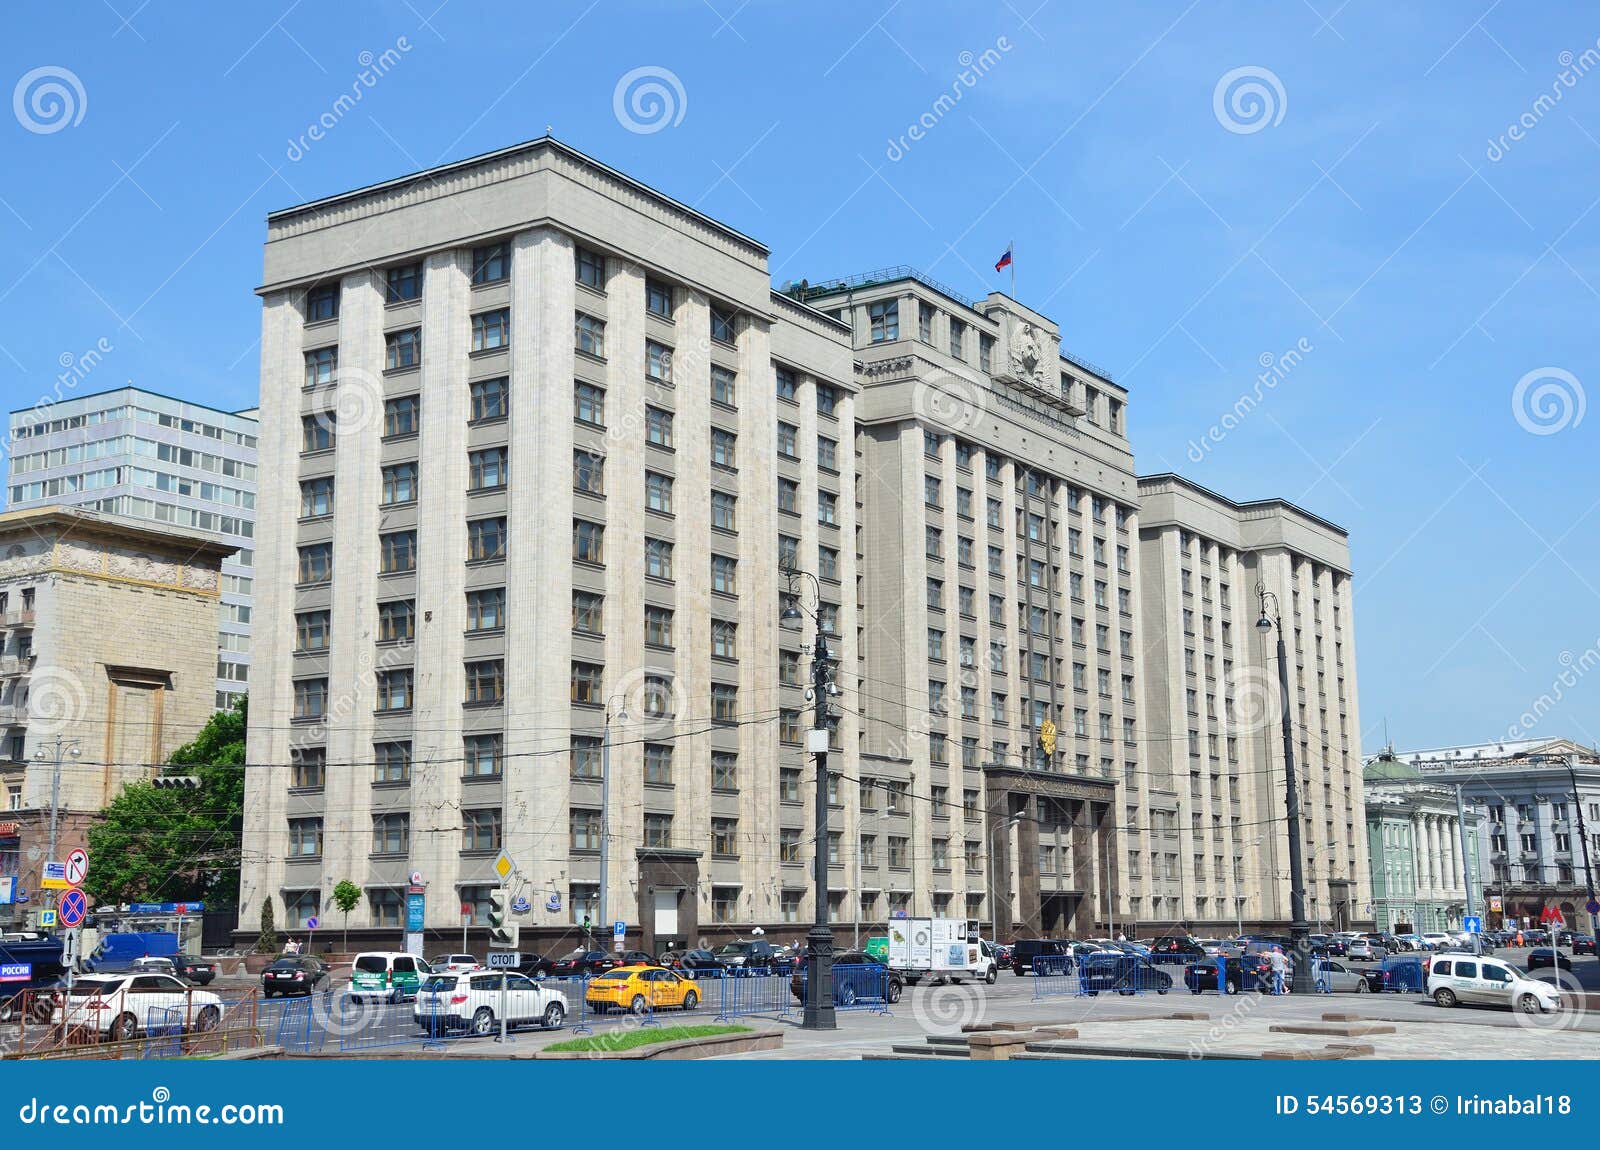 Фотография здания Госдумы 1920x1080